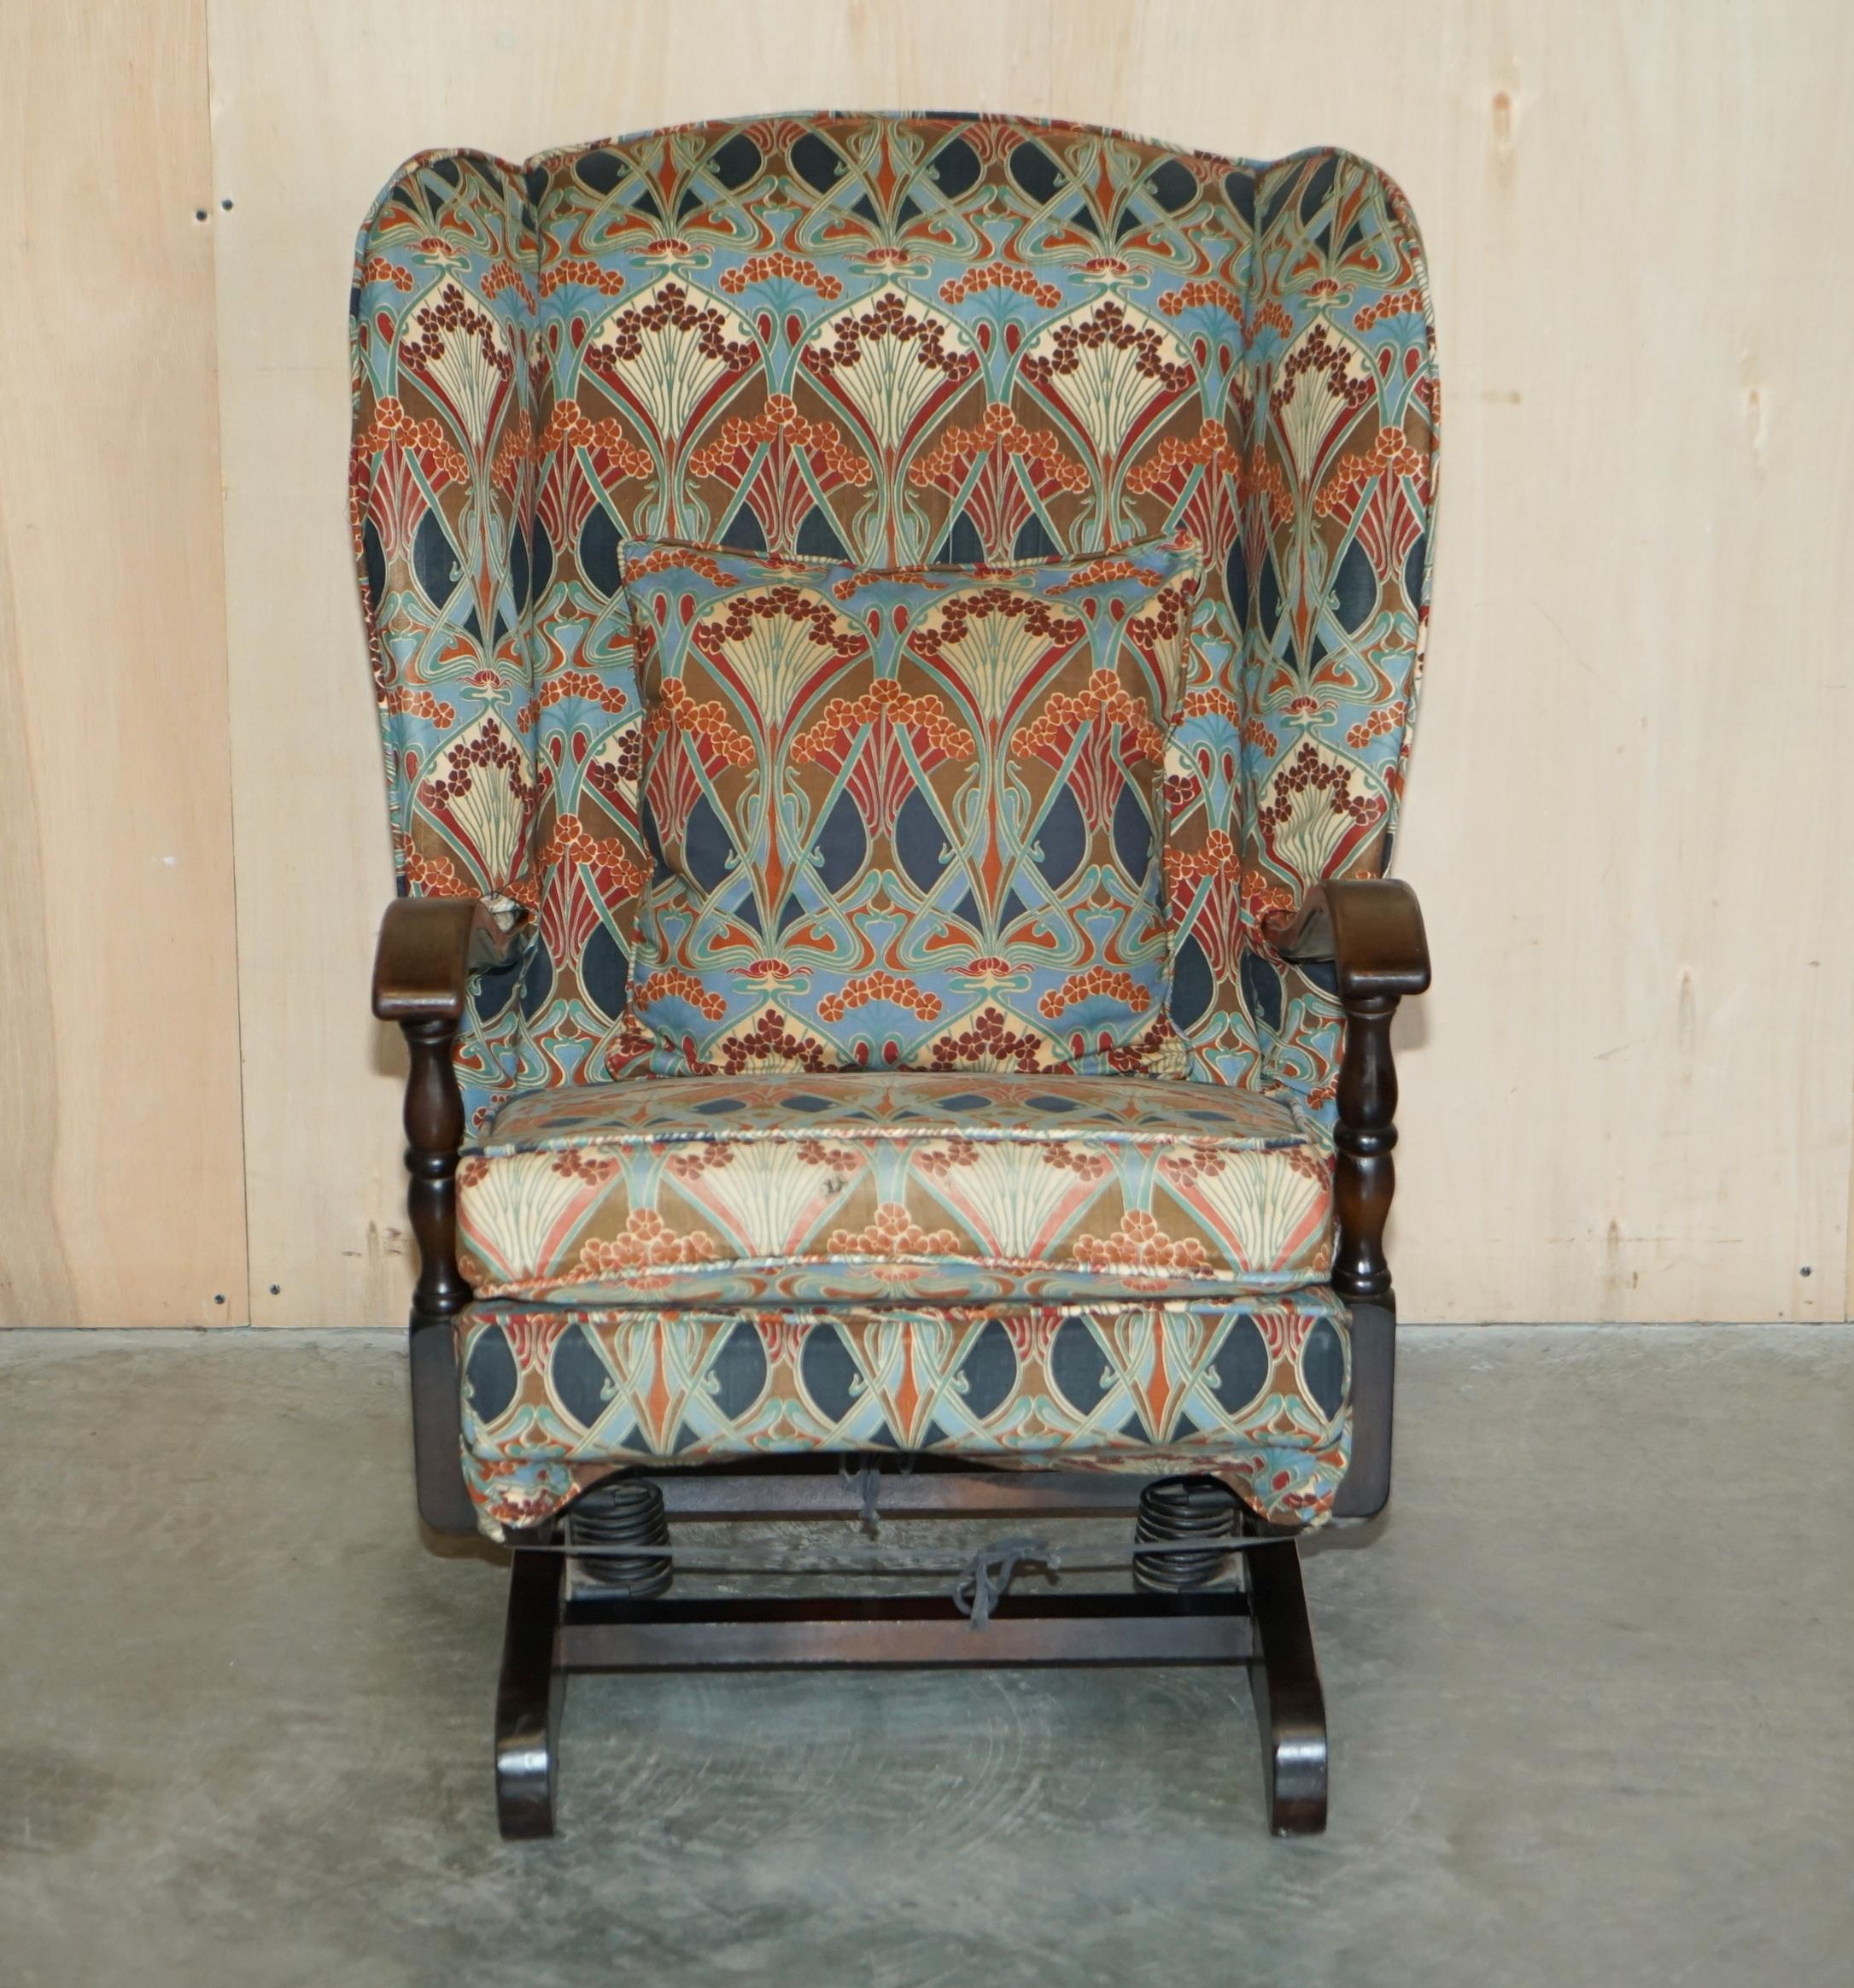 Royal House Antiques

Royal House Antiques a le plaisir d'offrir à la vente un superbe fauteuil à bascule anglais des années 1930 avec housse amovible en tissu Ianthe de Liberty's London. 

Veuillez noter que les frais de livraison indiqués sont